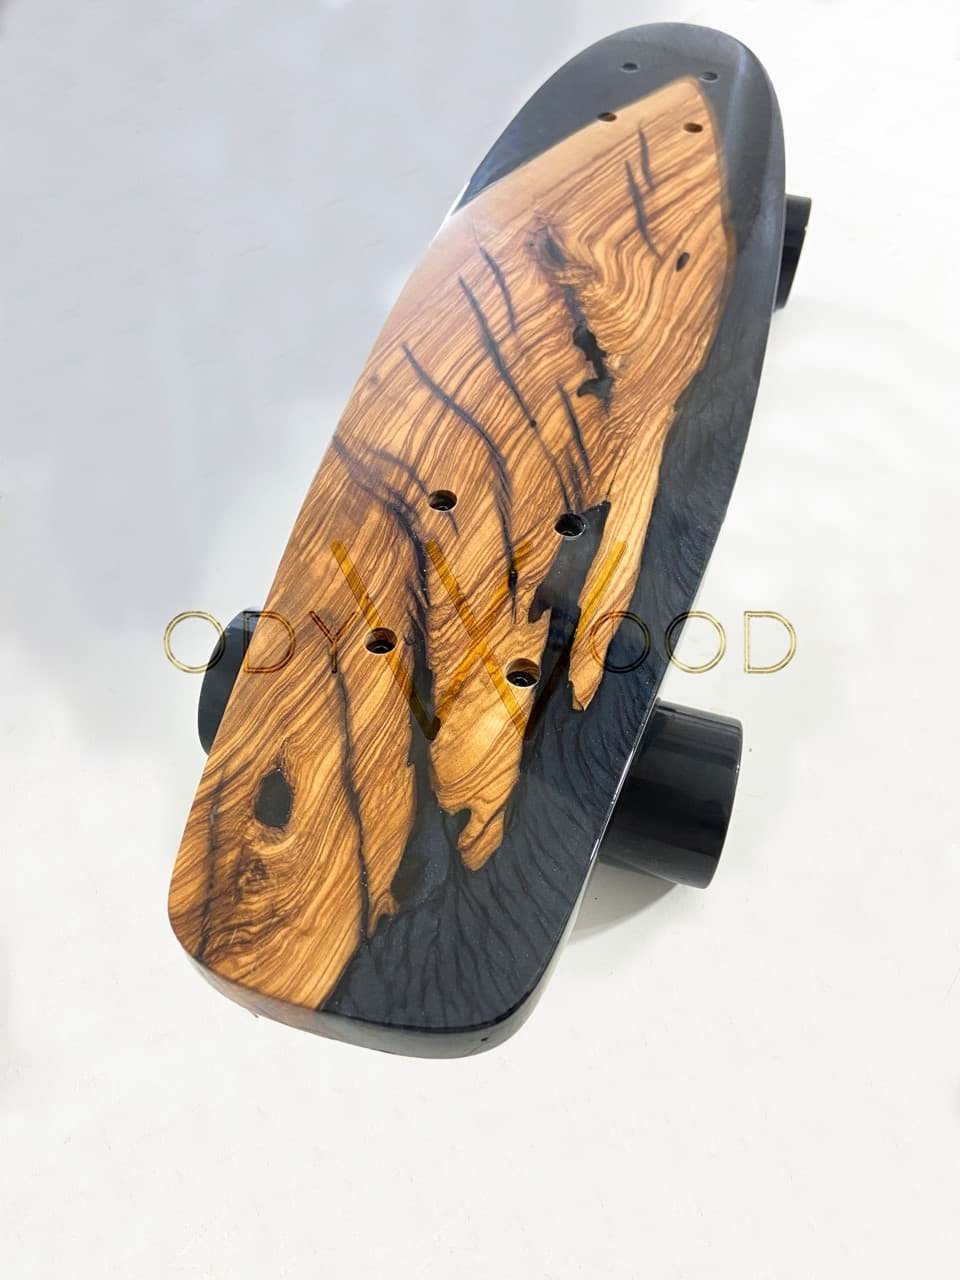 Özel Üretim Epoksi Penny Skateboard resmi